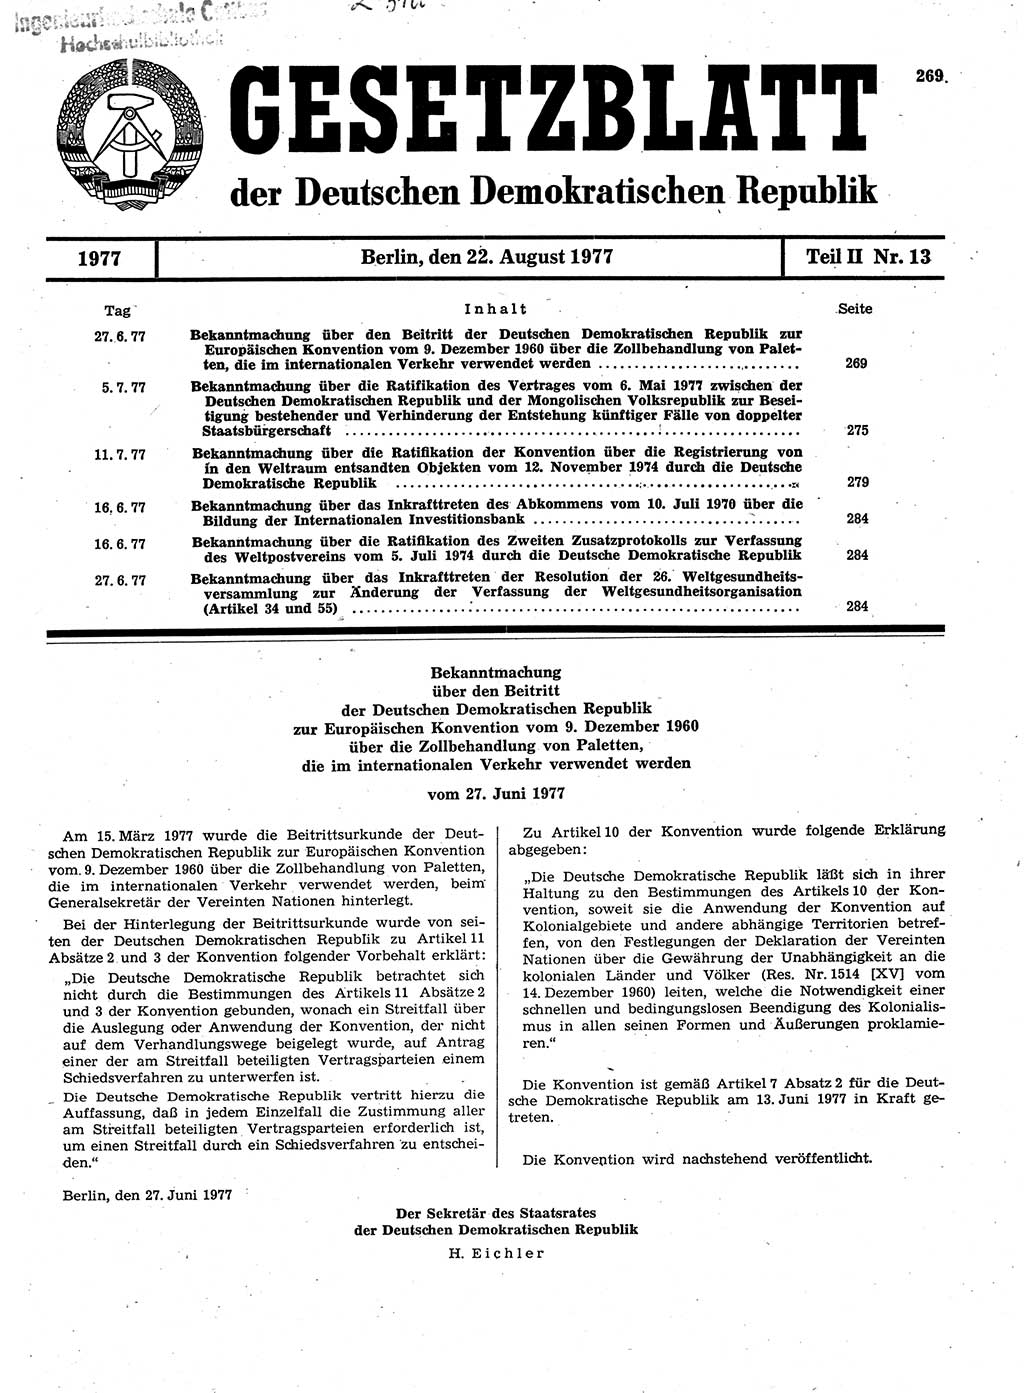 Gesetzblatt (GBl.) der Deutschen Demokratischen Republik (DDR) Teil ⅠⅠ 1977, Seite 269 (GBl. DDR ⅠⅠ 1977, S. 269)